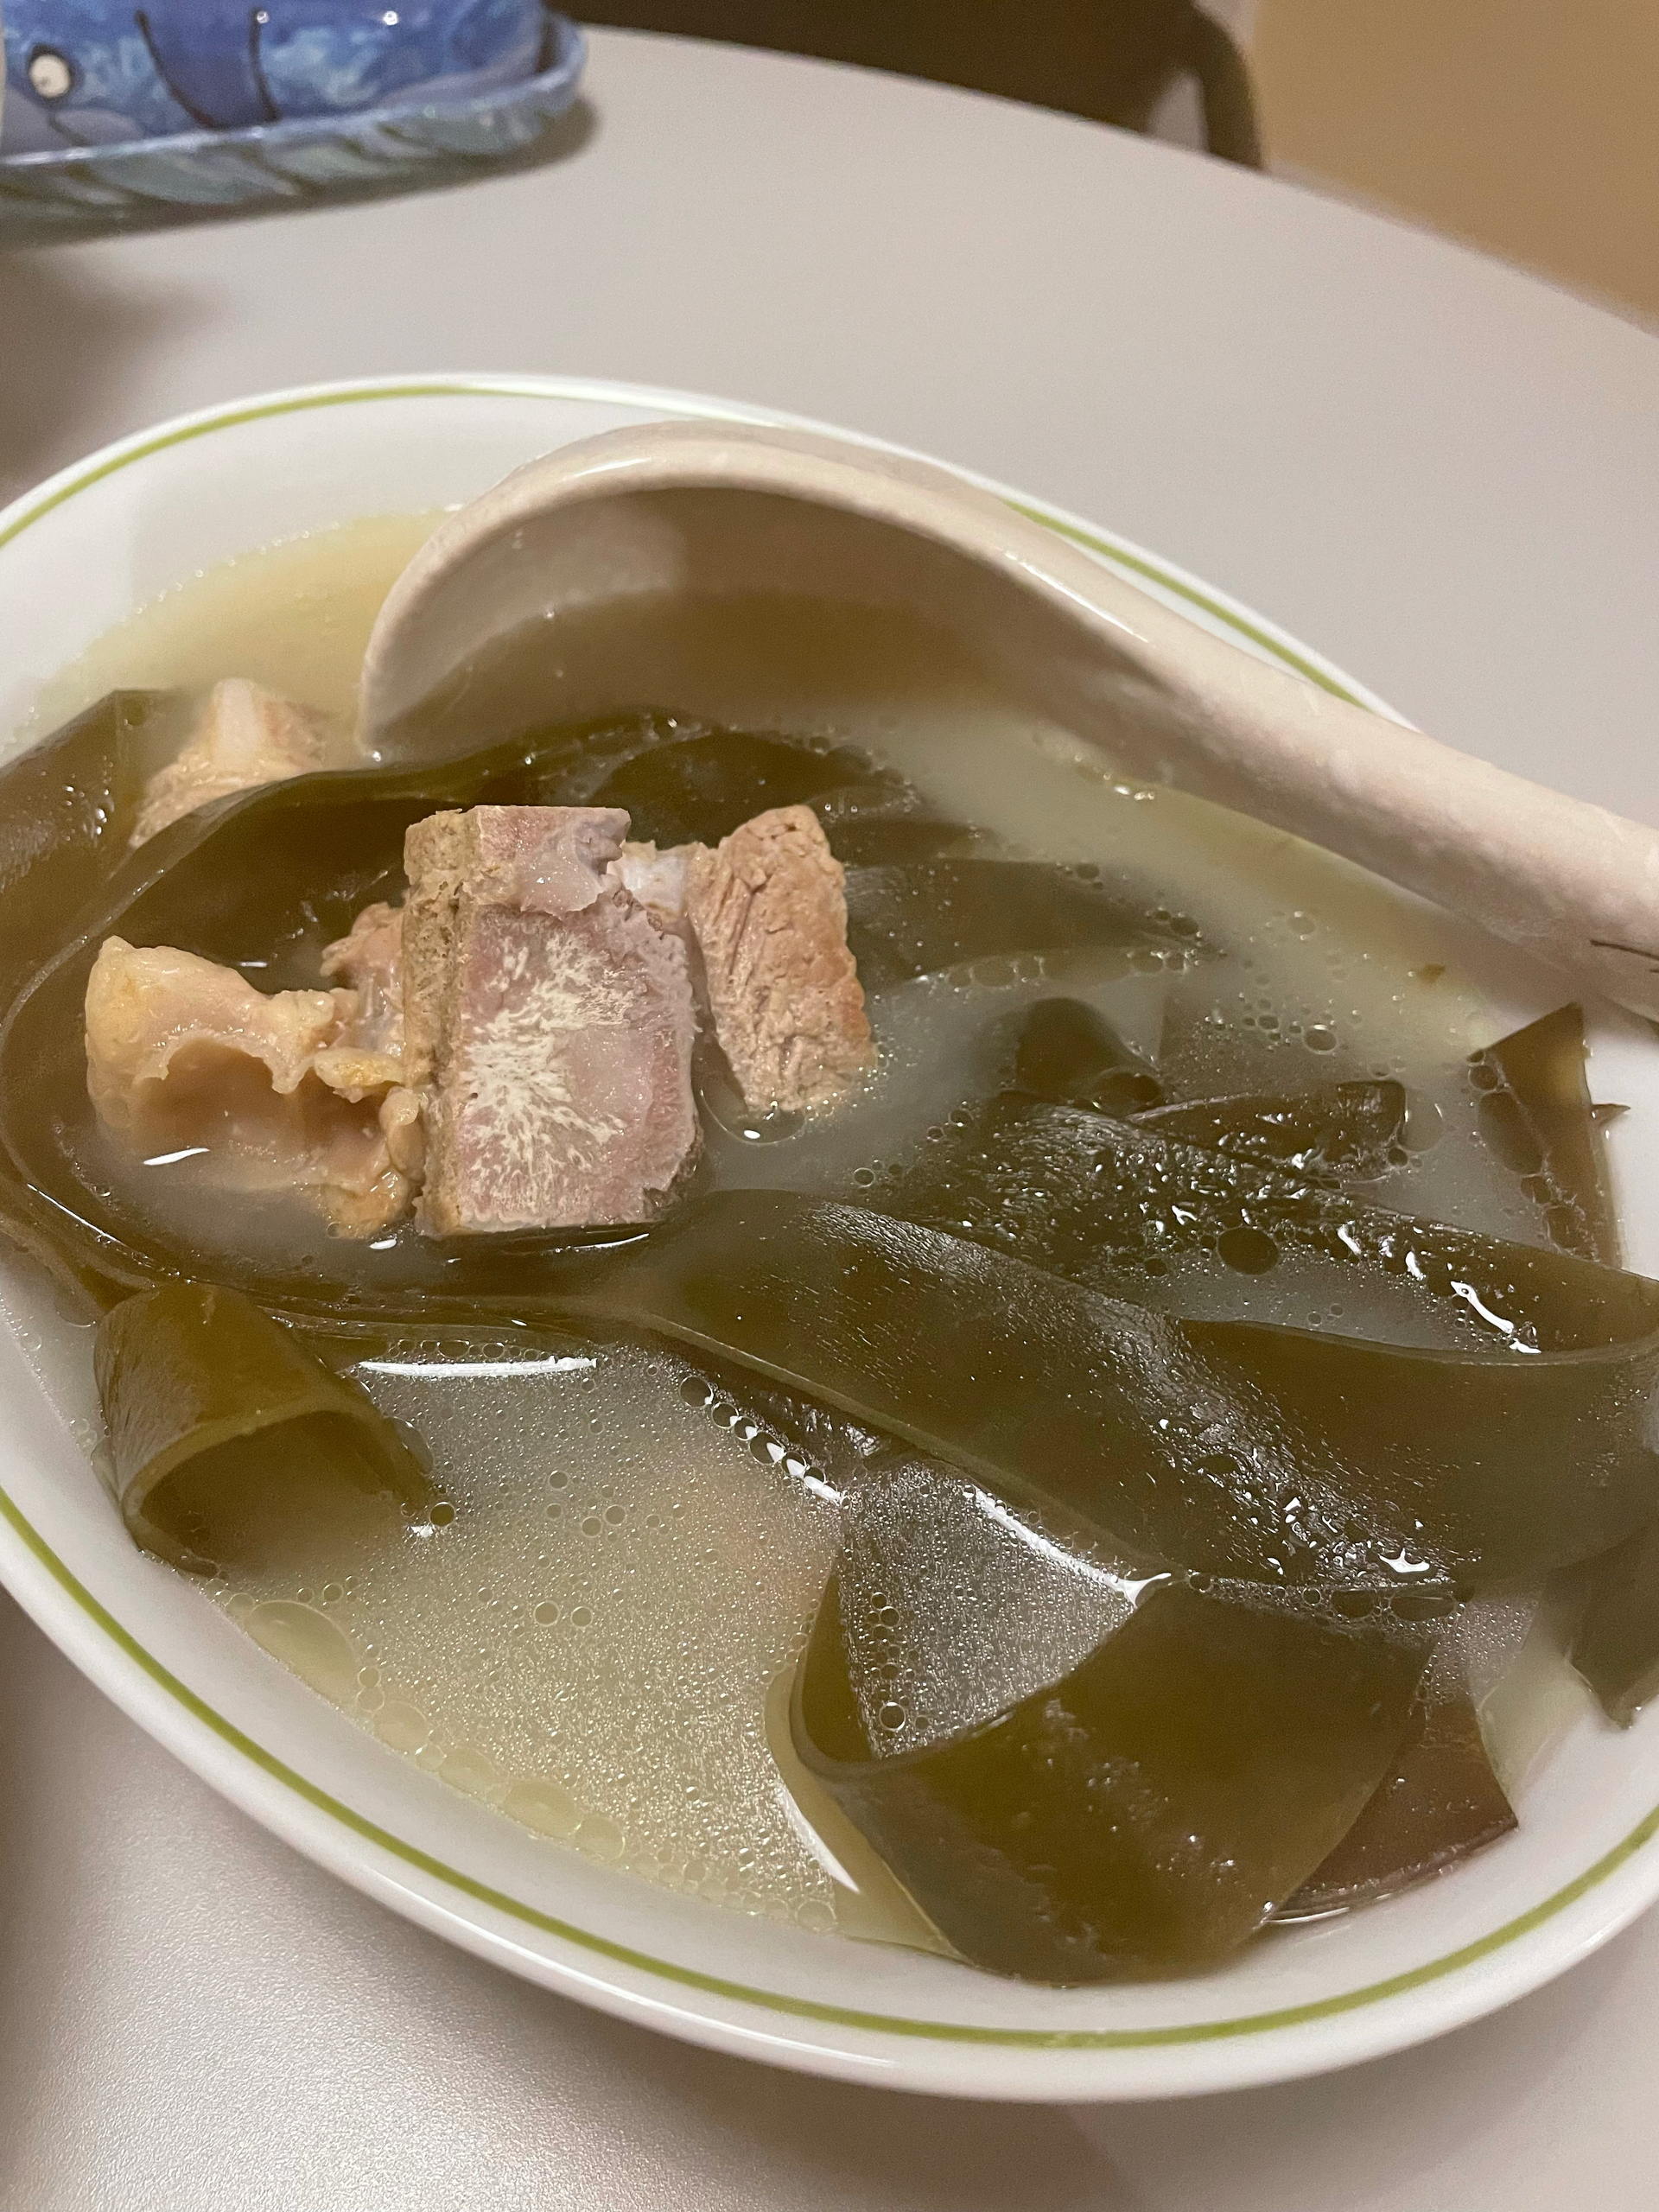 海带排骨肉汤
每日一汤养生